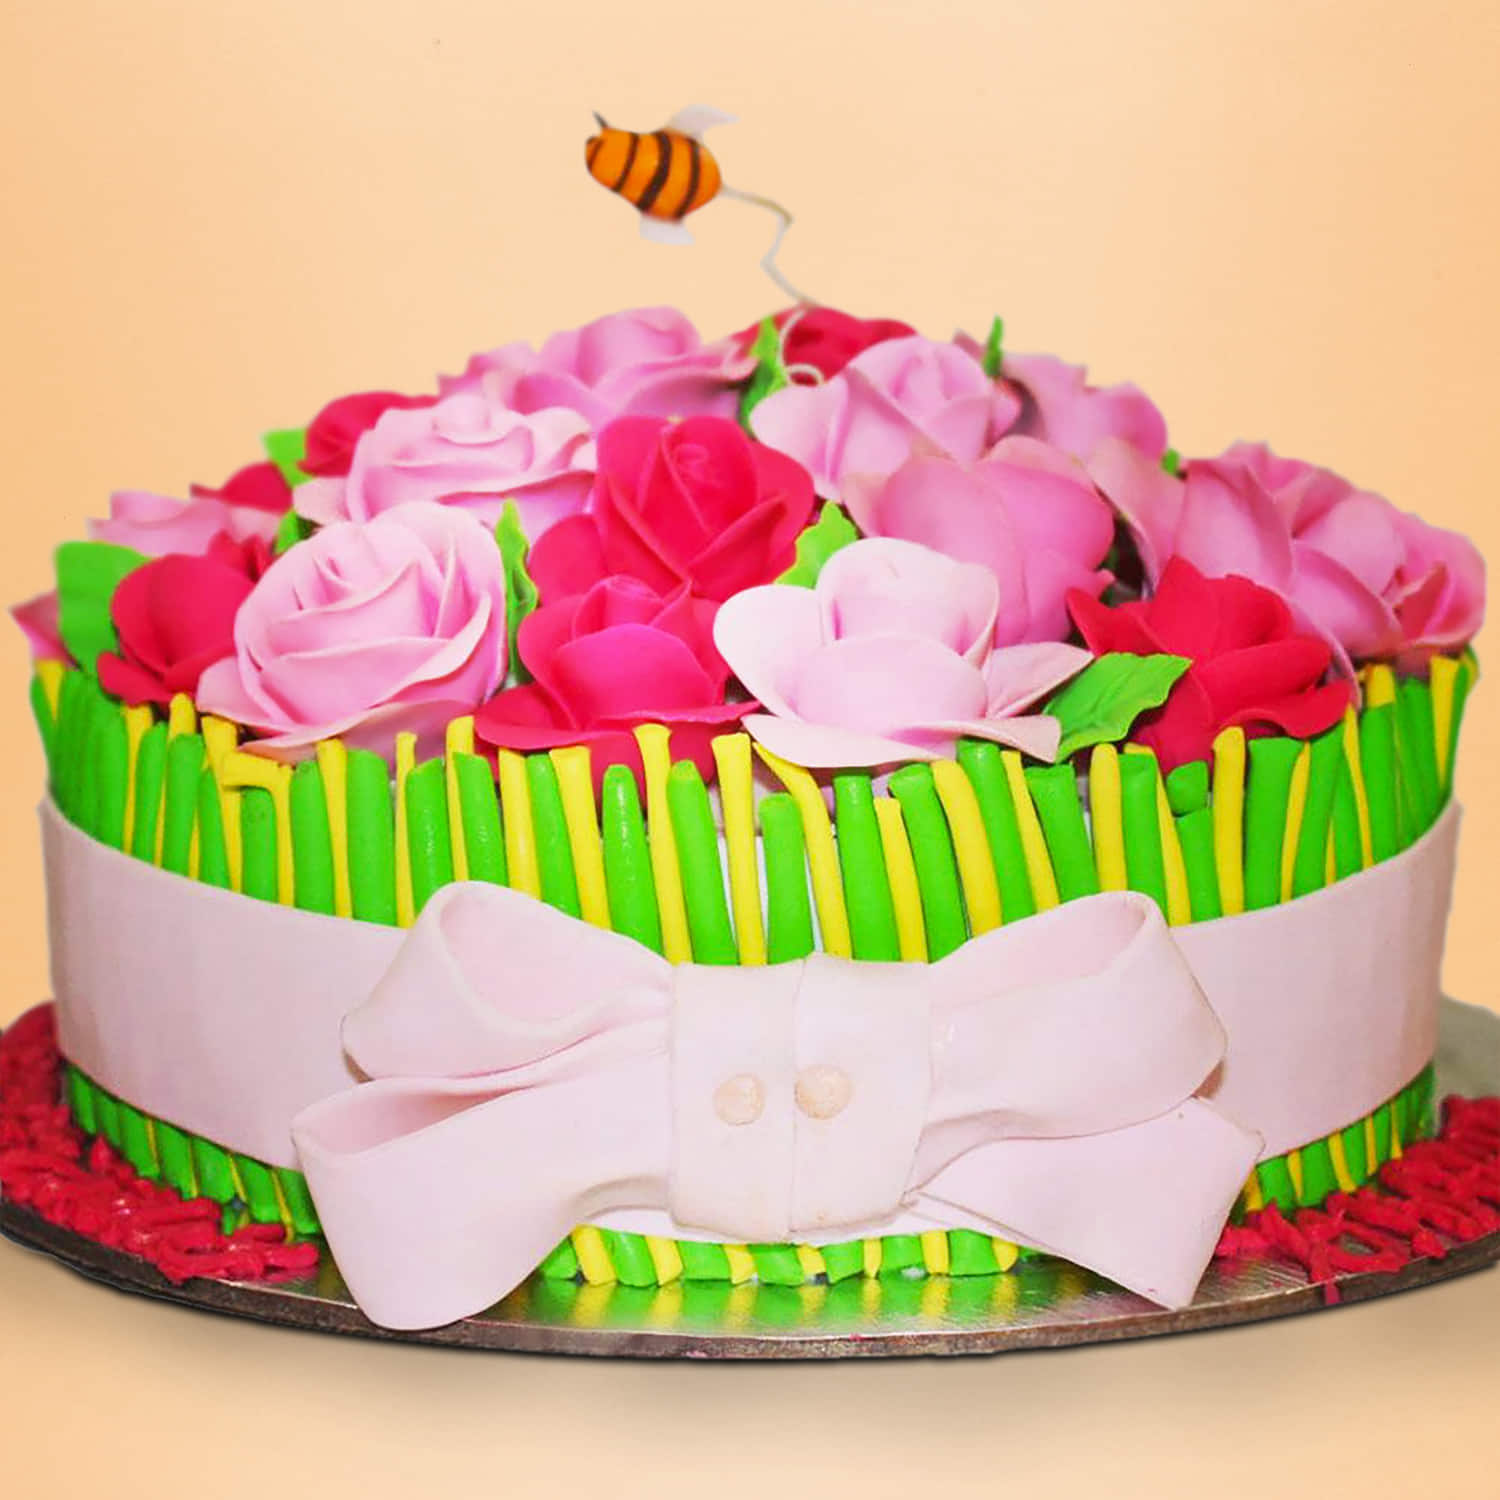 l Honey Rose Cake | हनी रोझ केक | - YouTube